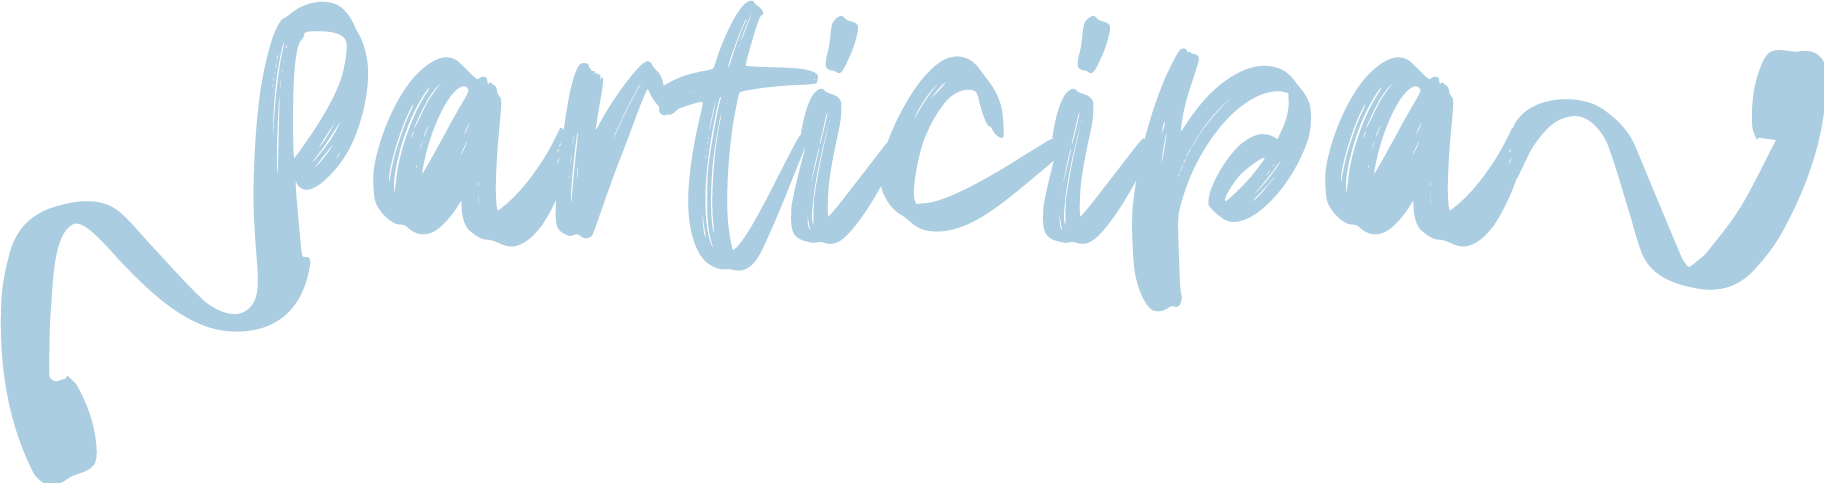 Imagen de letras con la palabra "Participa"